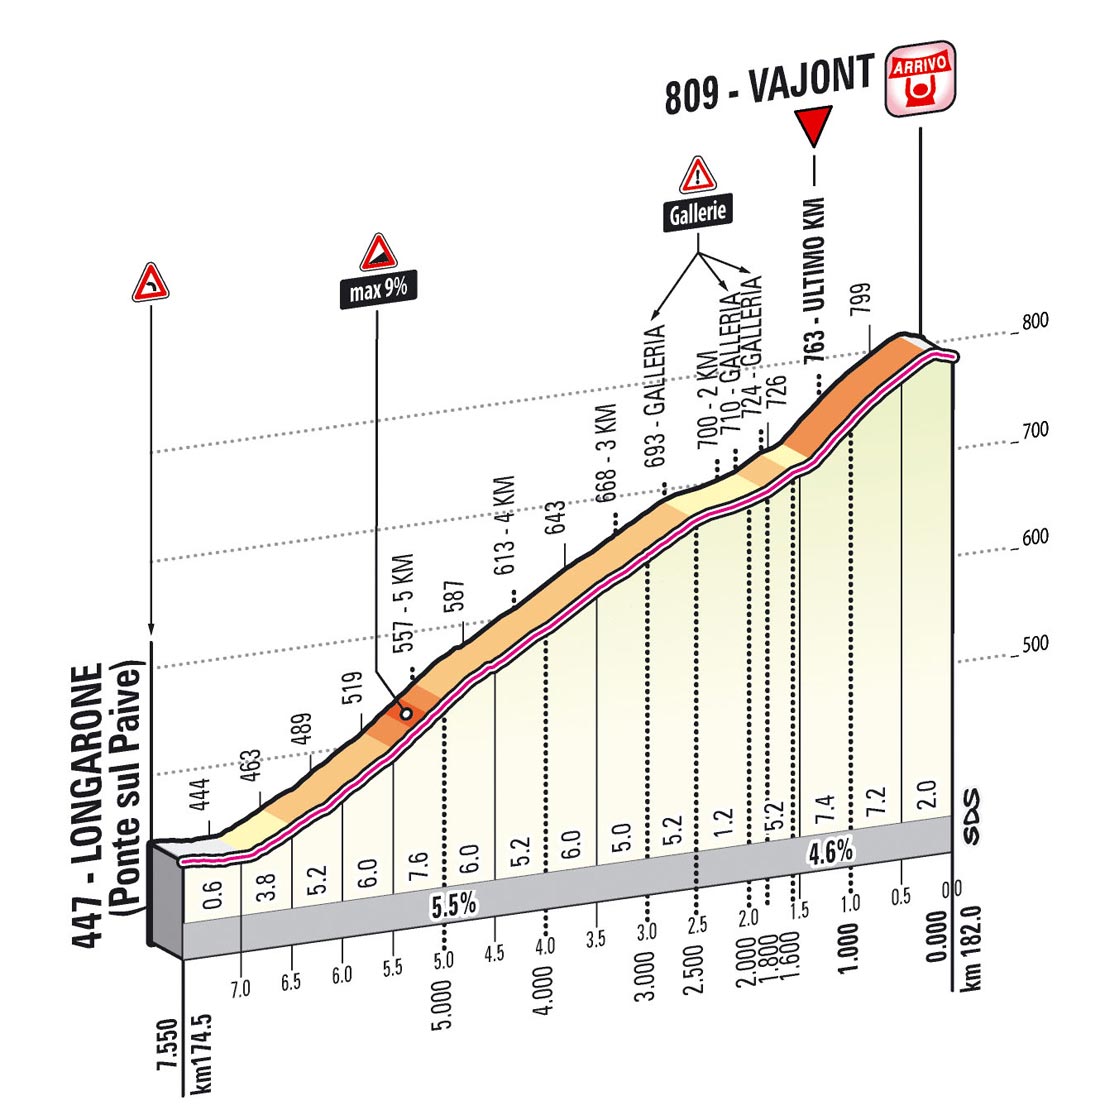 Giro d'Italia 2013 stage 11 last kms